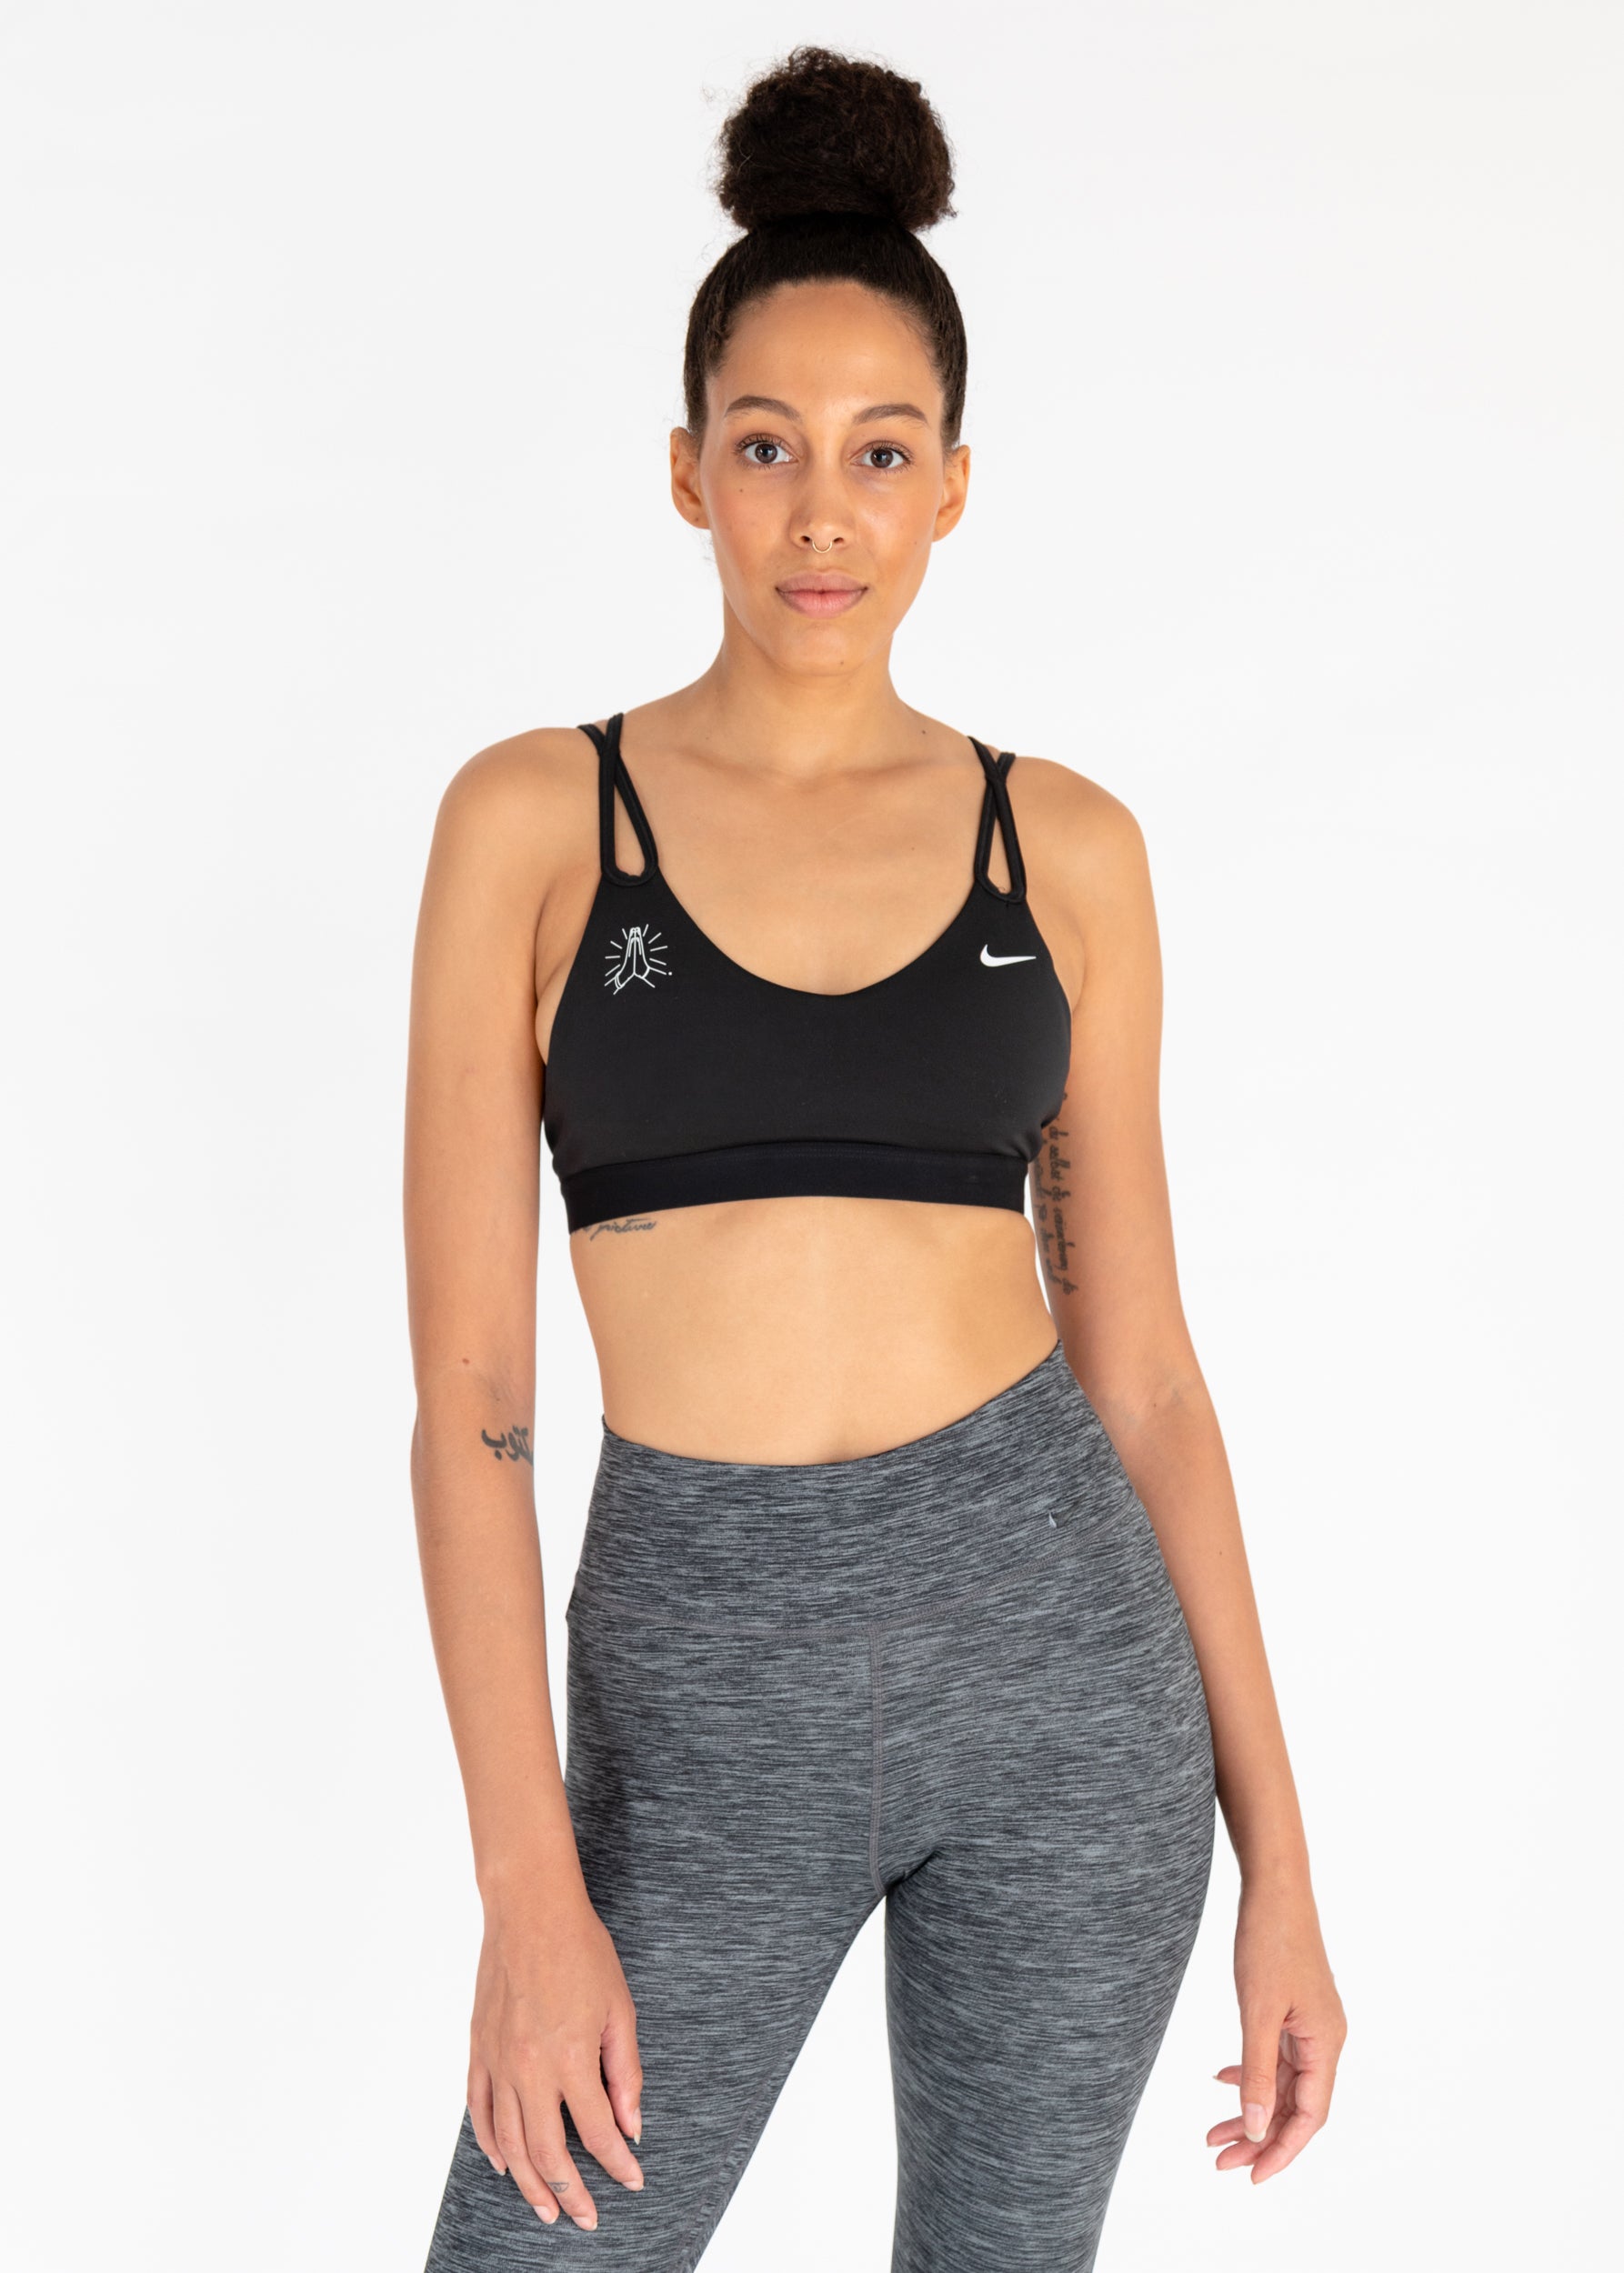 A yoga bra that feels like a dream - Nike Email Archive